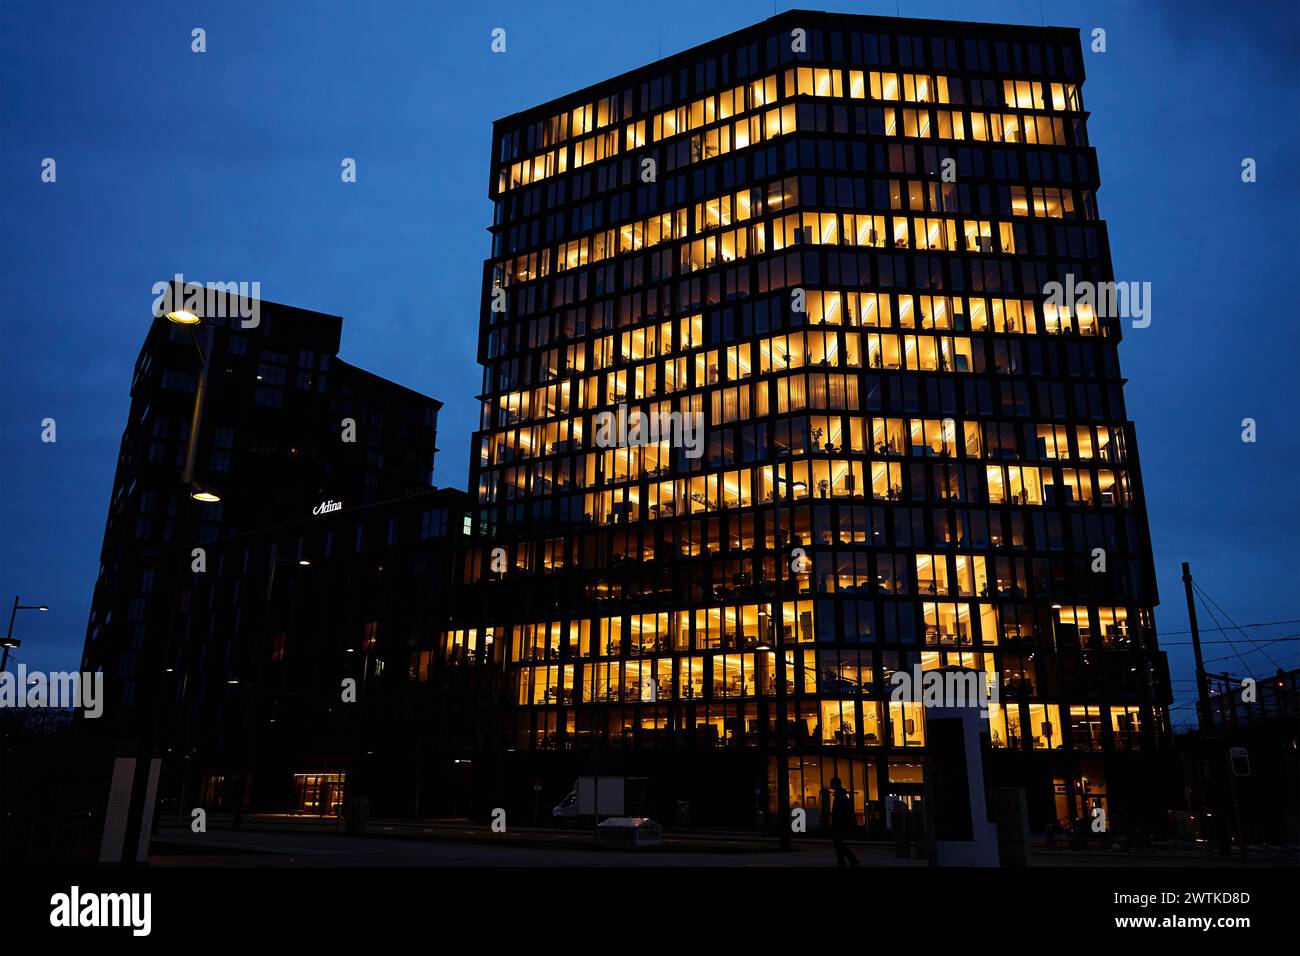 Das Bürogebäude beleuchtet den Abend mit Fenstern, die in der Abenddämmerung leuchten und das städtische Arbeitsleben nach Geschäftsschluss veranschaulichen Stockfoto